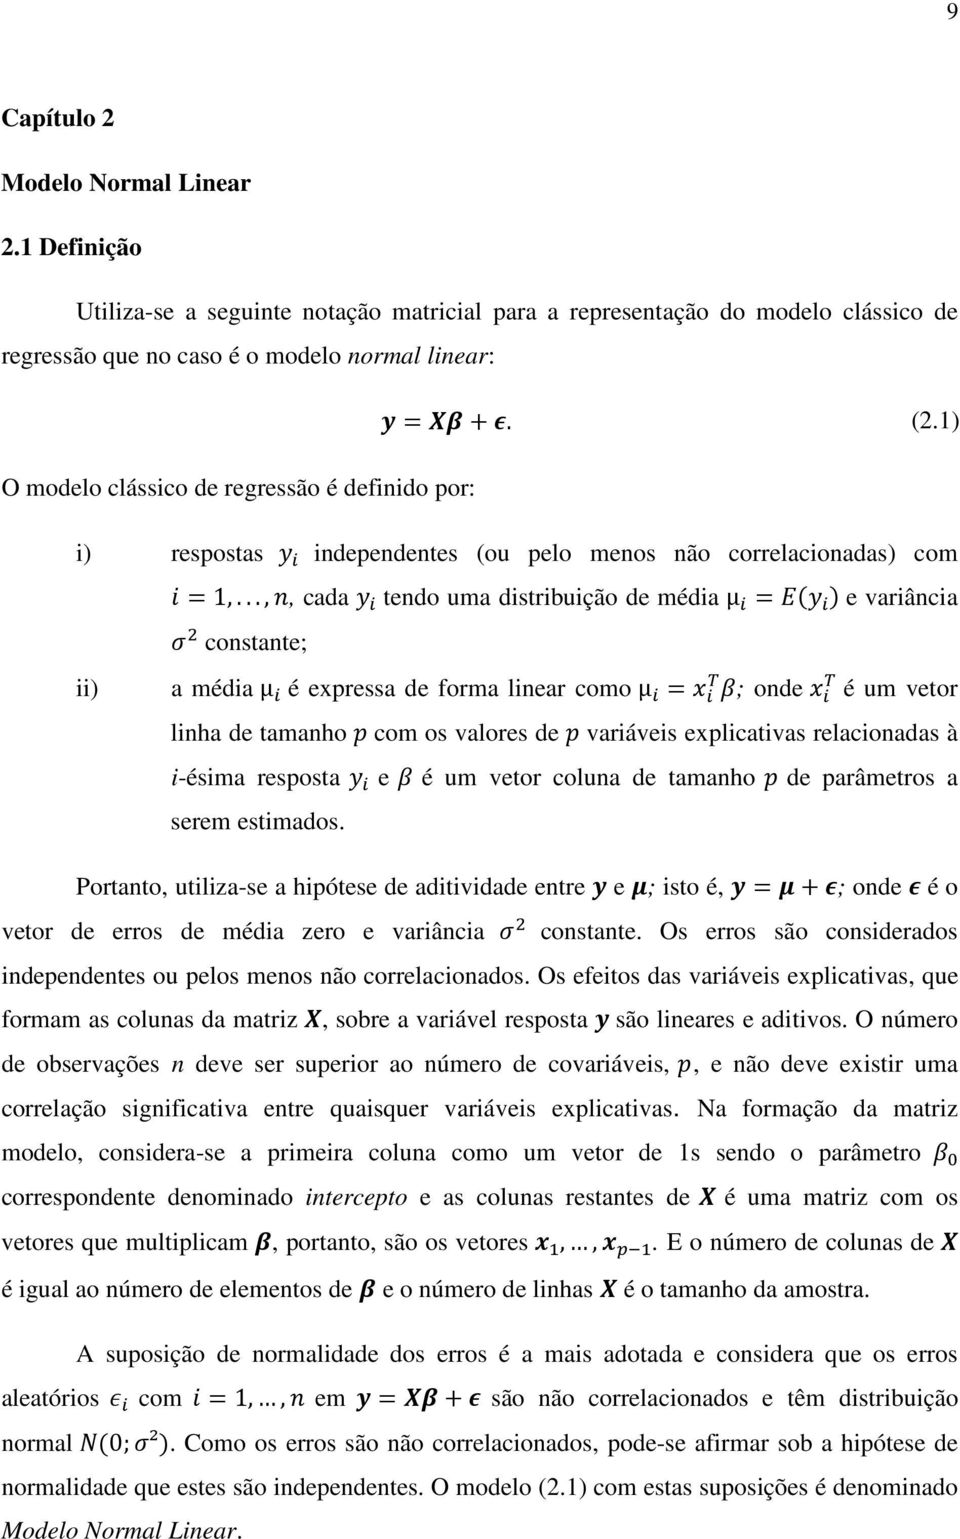 ..,, cada tendo uma distribuição de média μ = e variância constante; ii) a média μ é expressa de forma linear como μ = ; onde é um vetor linha de tamanho com os valores de variáveis explicativas